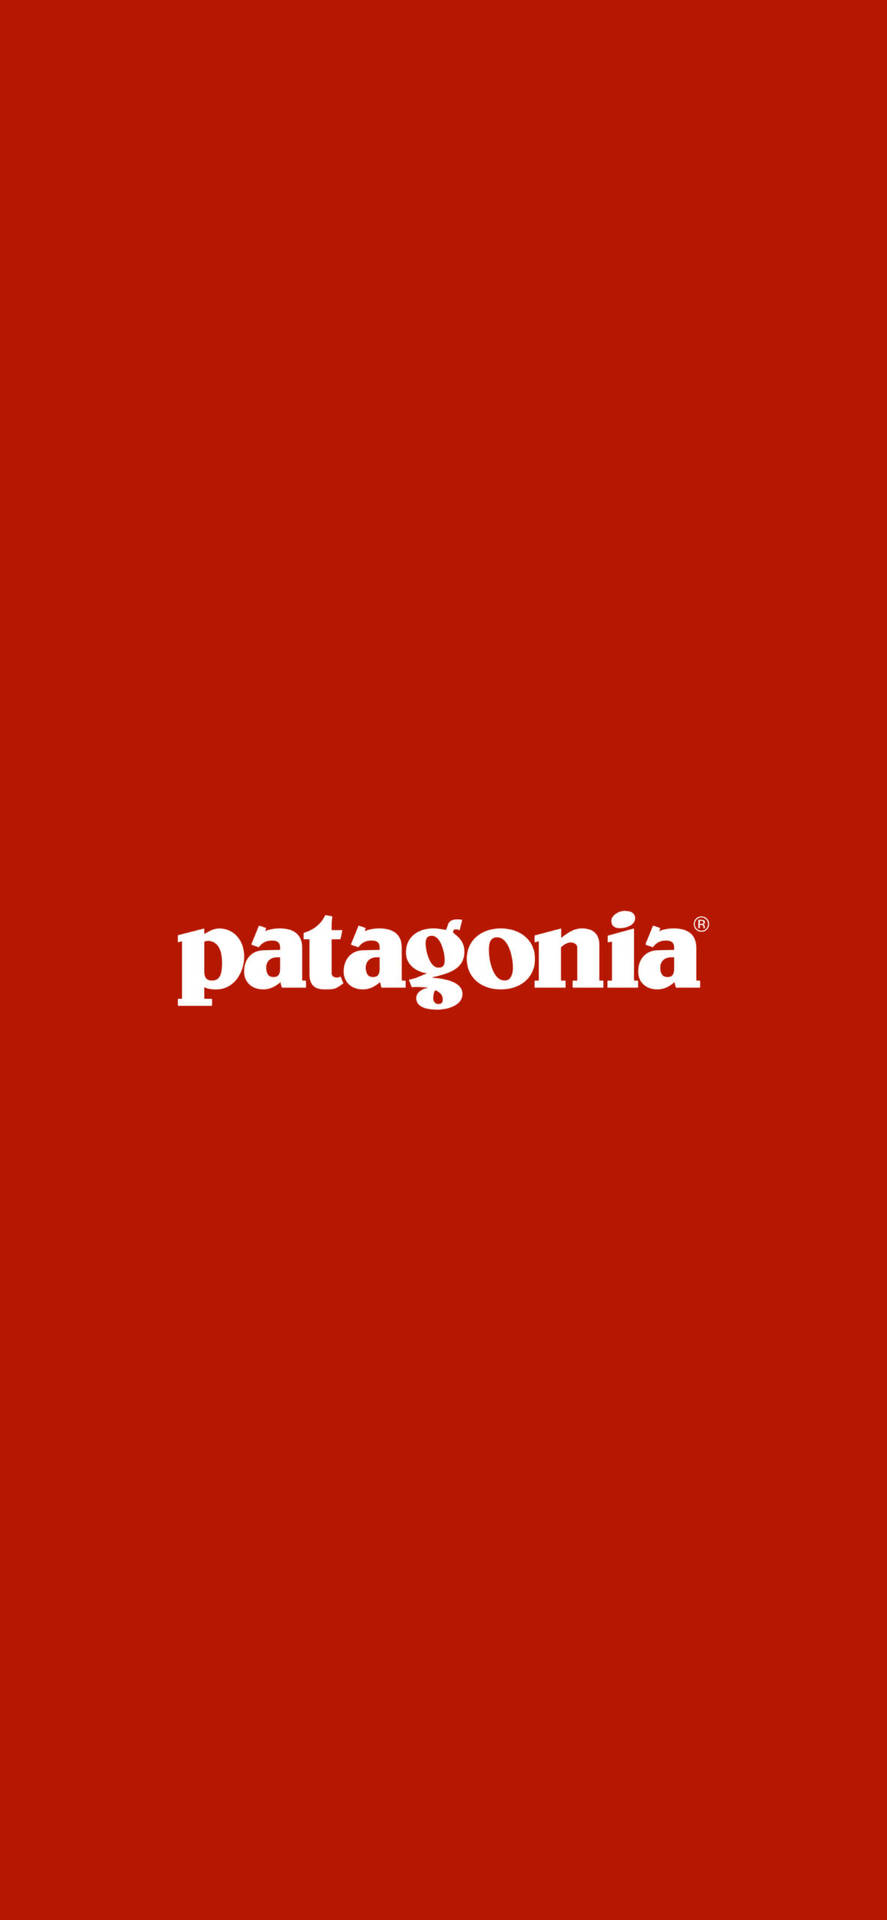 Red Patagonia Logo Background